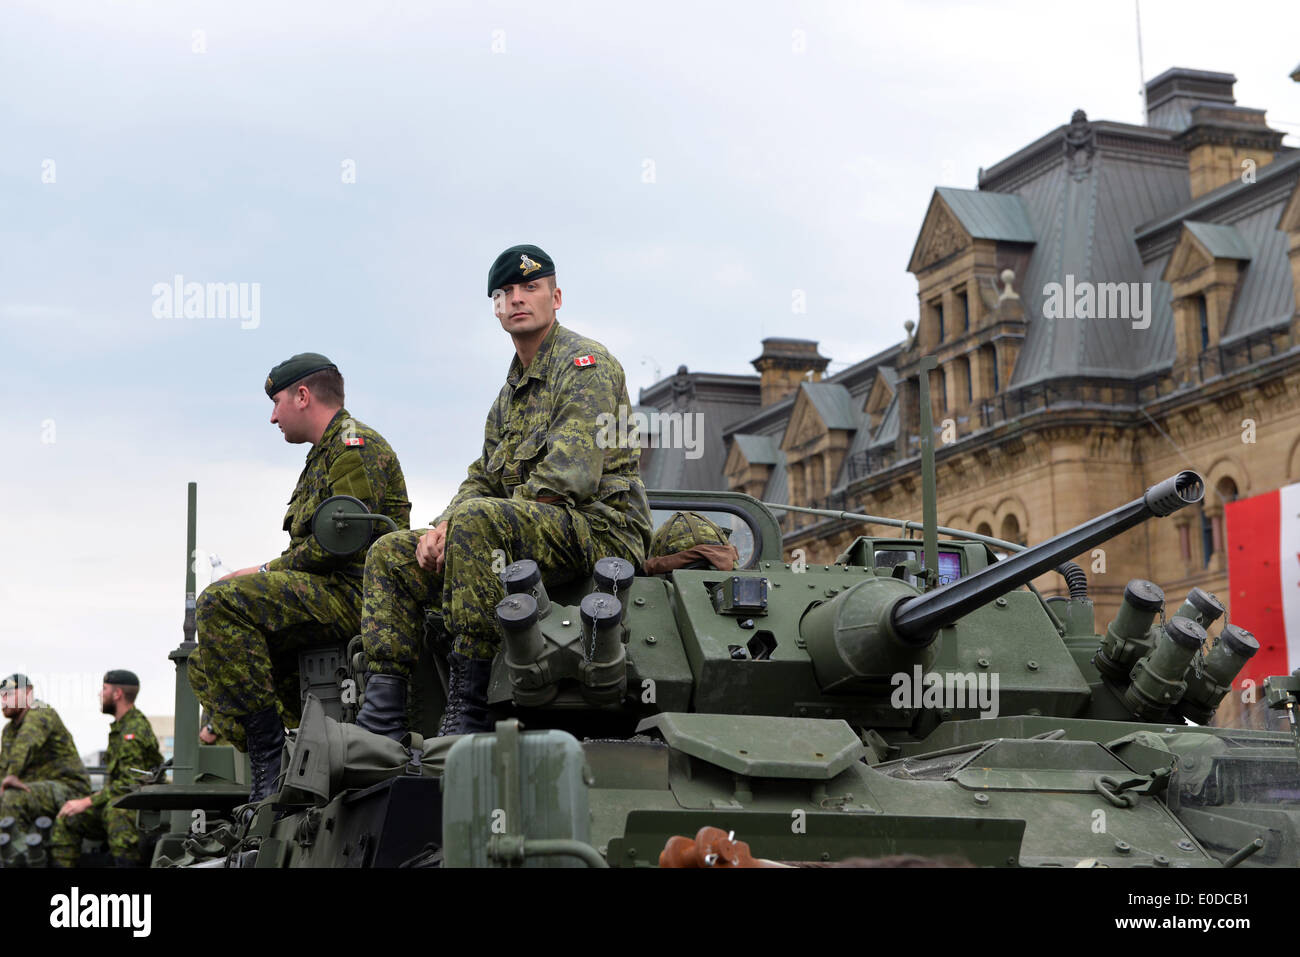 Les soldats qui ont servi dans les Forces canadiennes en Afghanistan ont été honorés sur la Colline du Parlement durant la journée nationale de l'honneur le 9 mai 2014 à Ottawa, Canada Banque D'Images